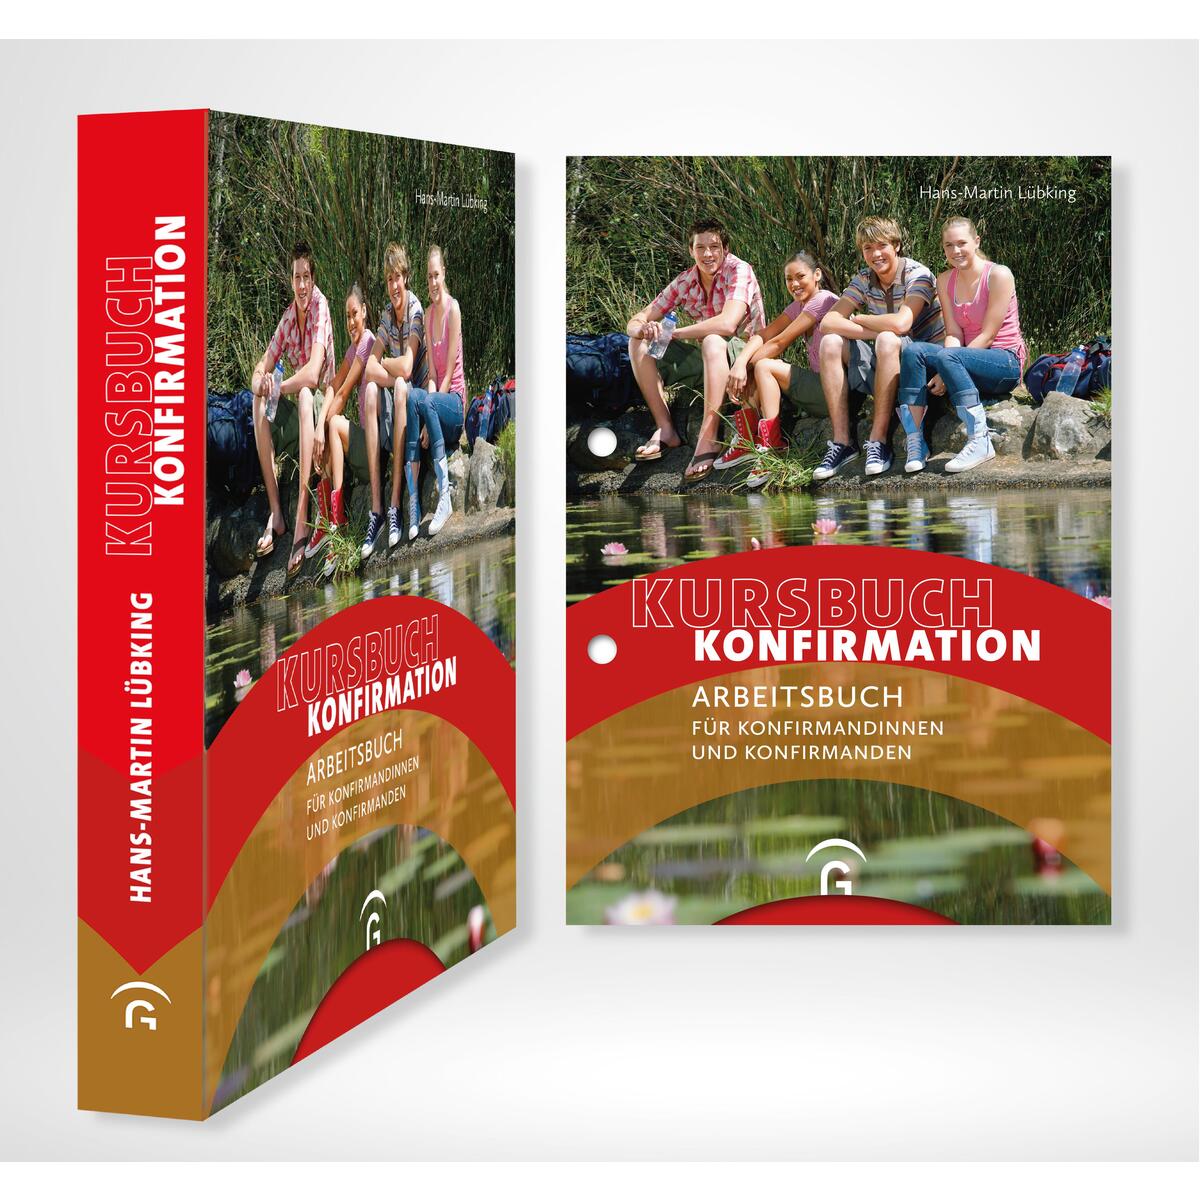 Kursbuch Konfirmation – NEU von Gütersloher Verlagshaus